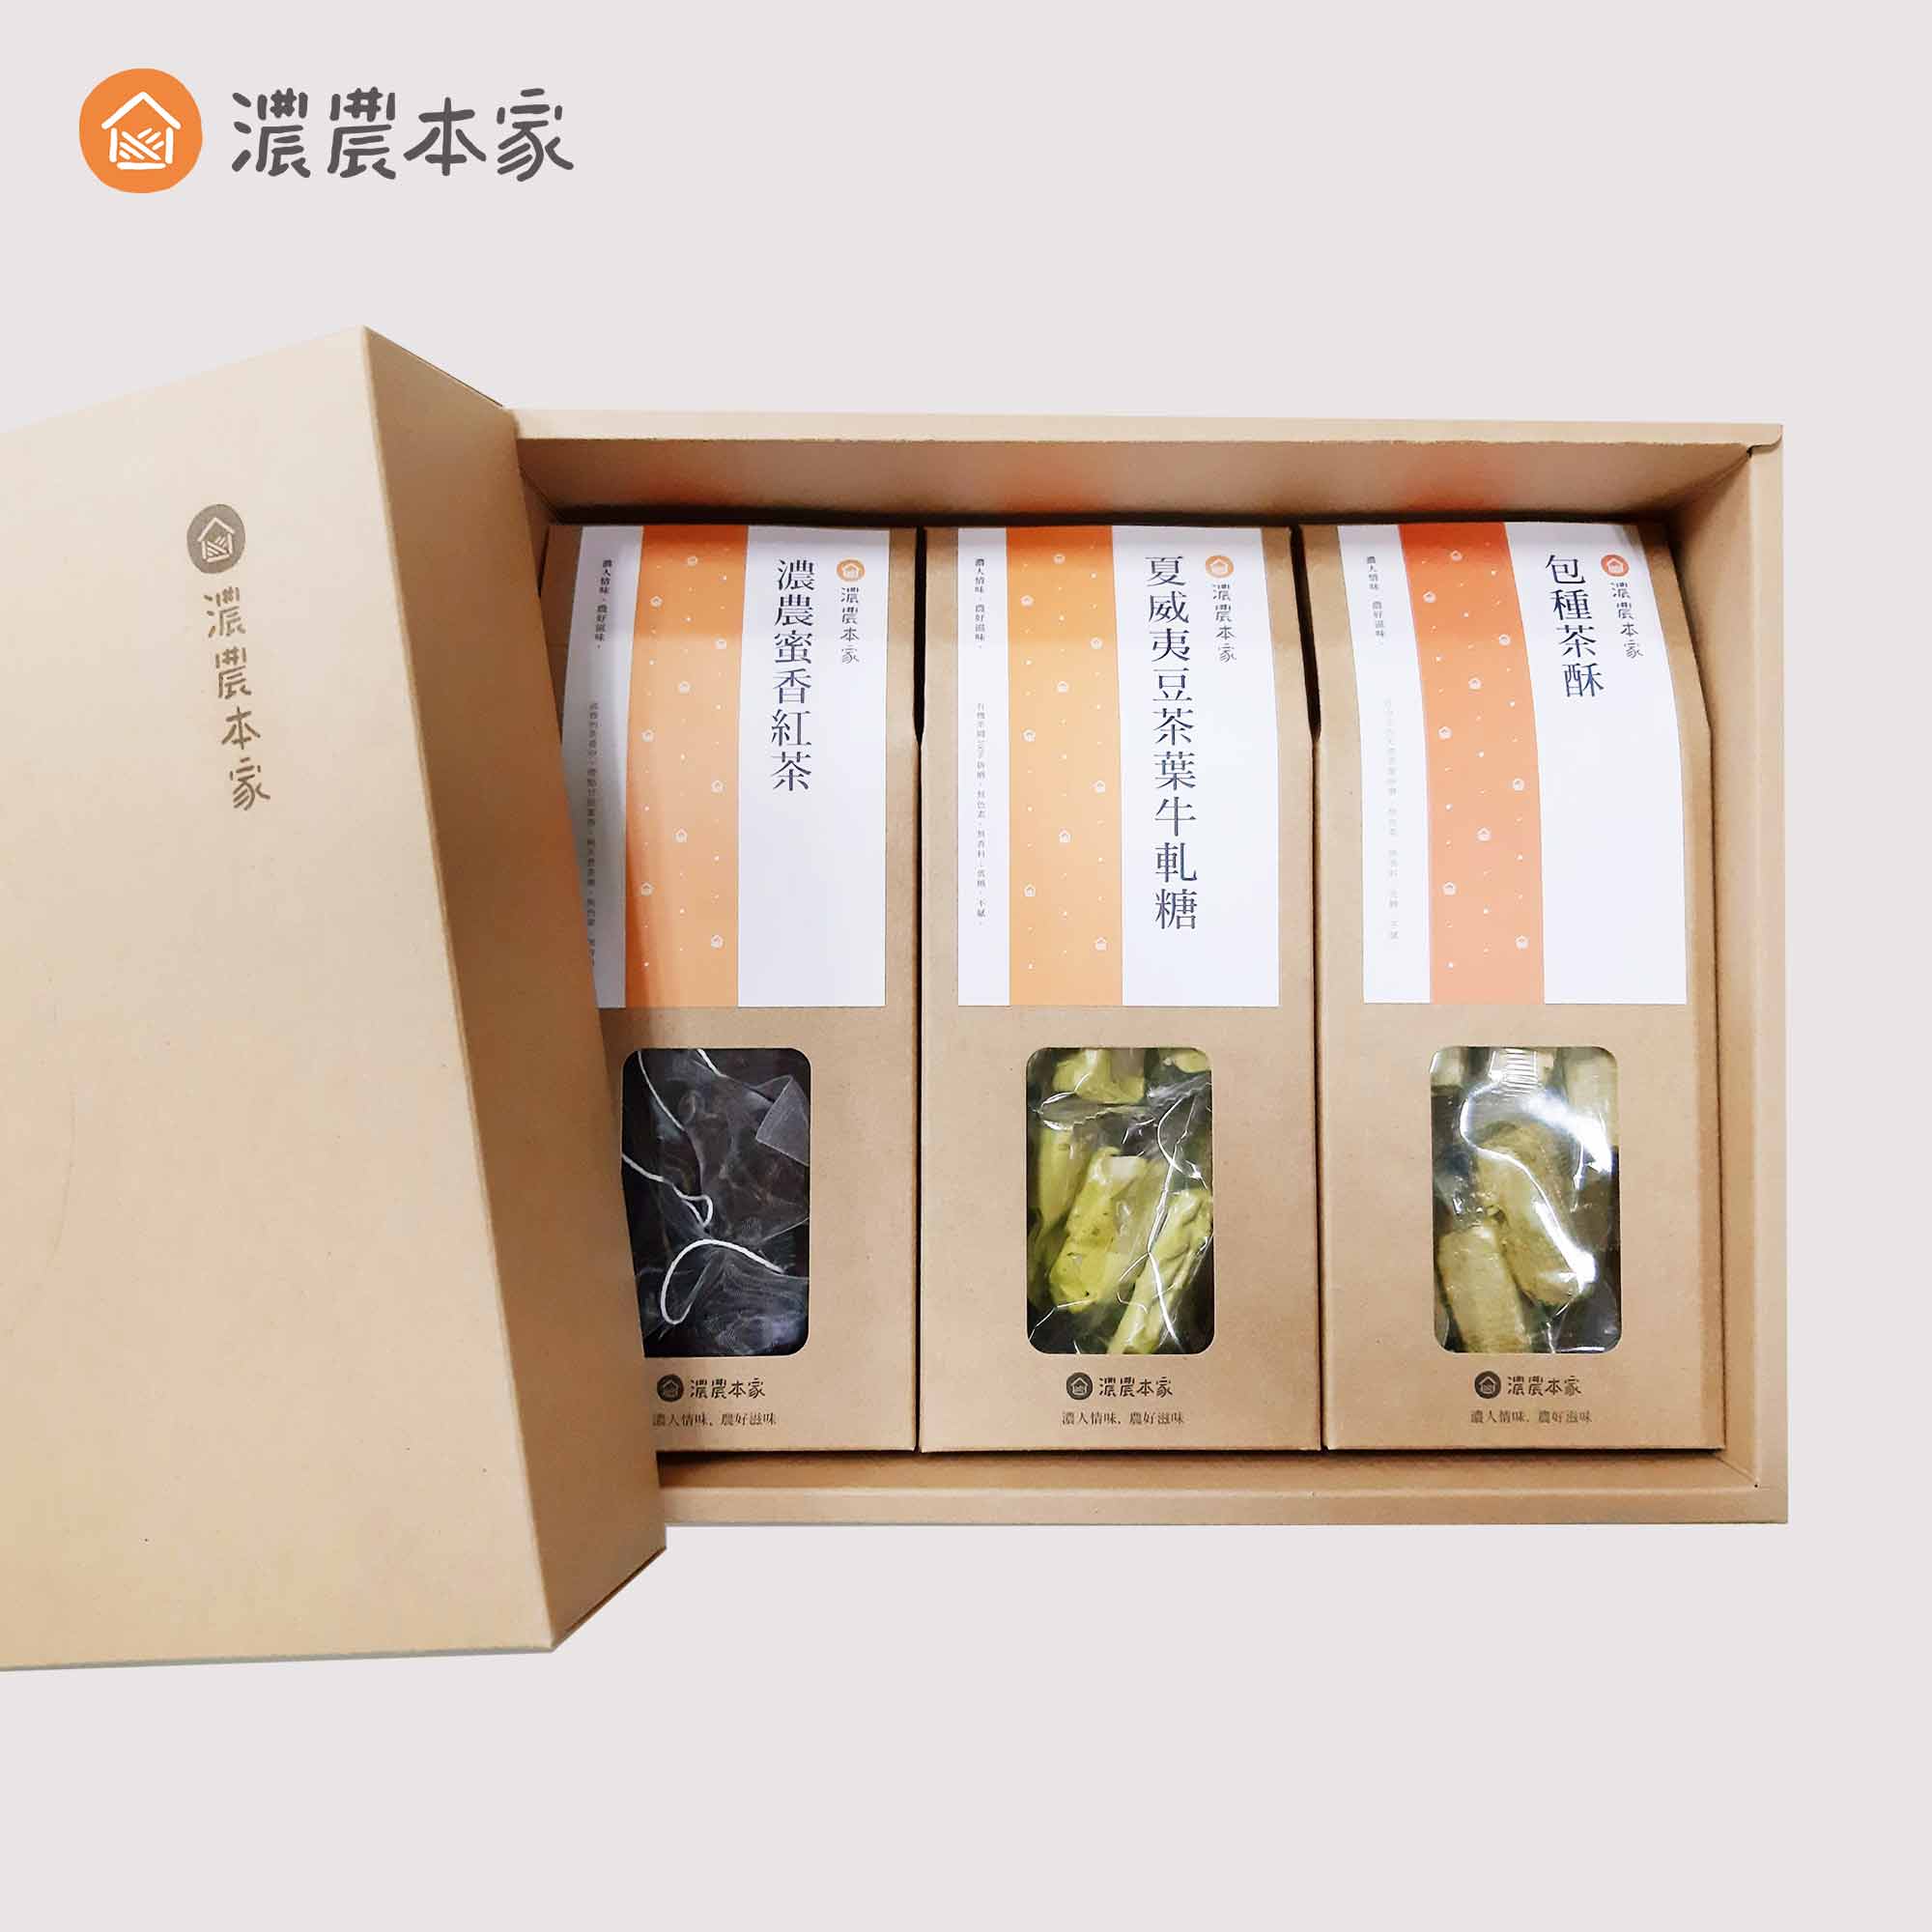 送禮小點心推薦人氣台灣茶點禮盒，宅配常溫不需冷藏，送禮超體面